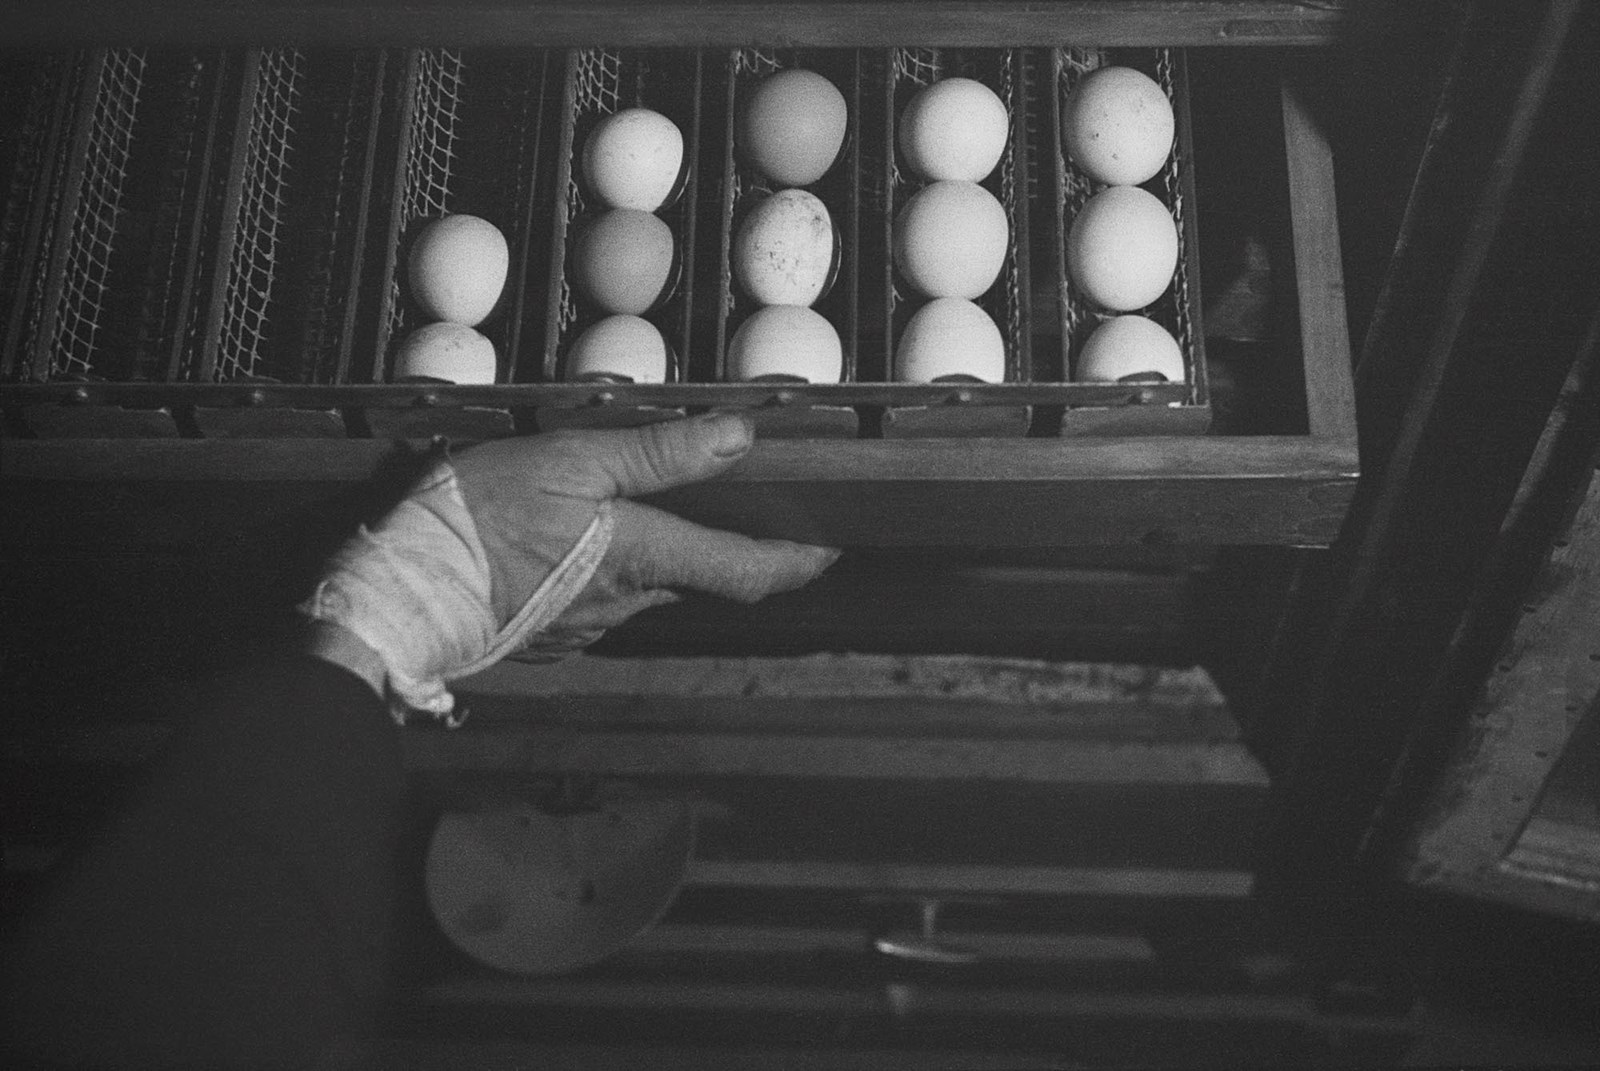 1938. Свежие яйца на учебной ферме в лагере для немецкой еврейской молодежи, ожидающей разрешения на эмиграцию. Бранденбург, Германия